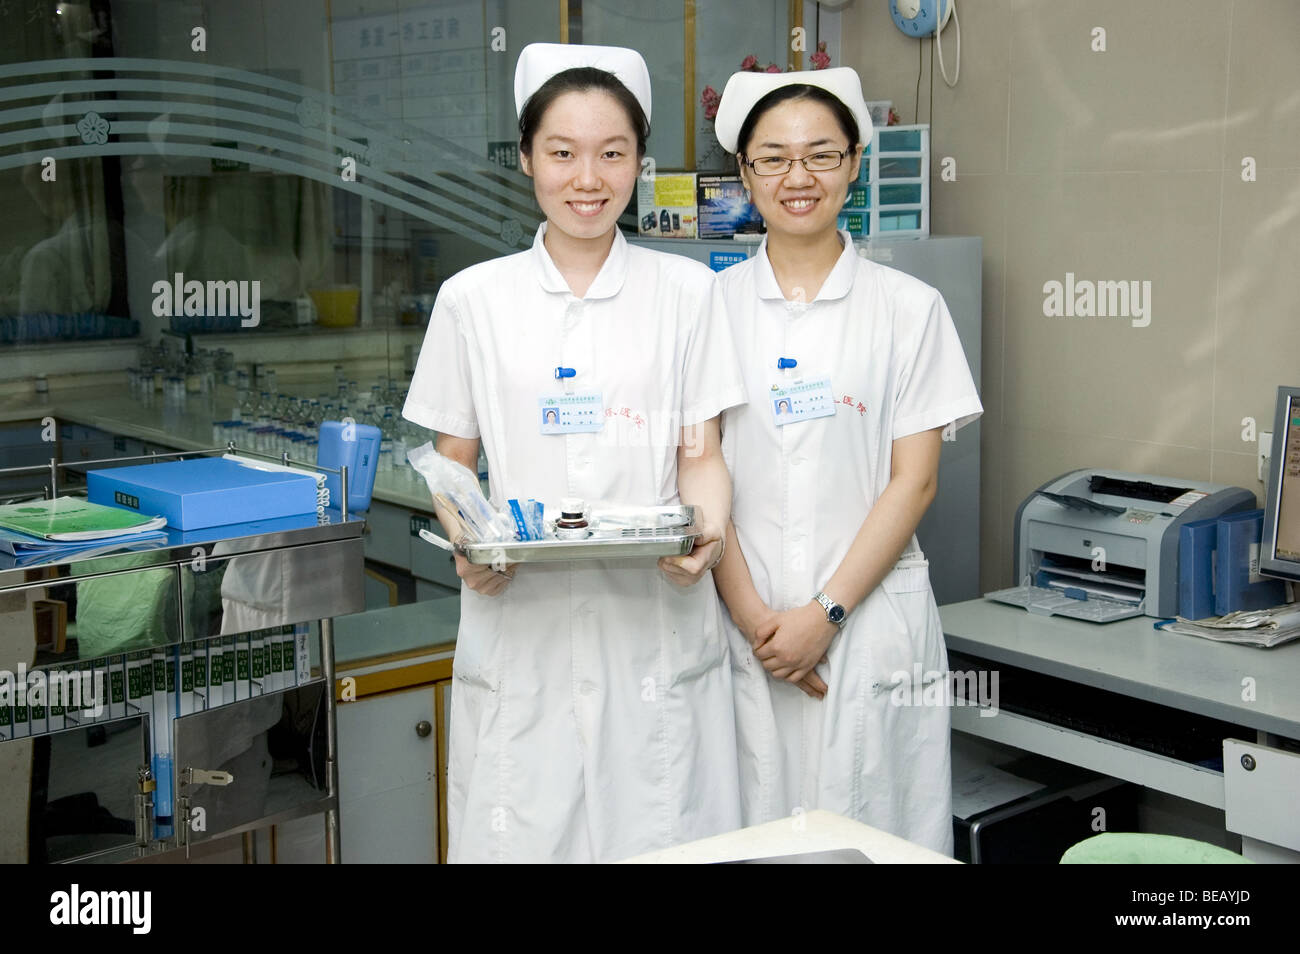 Shenzhen orthopedical hospital, estación de enfermeras. Jóvenes, felices y amables enfermeras chinas posando para fotos. Foto de stock